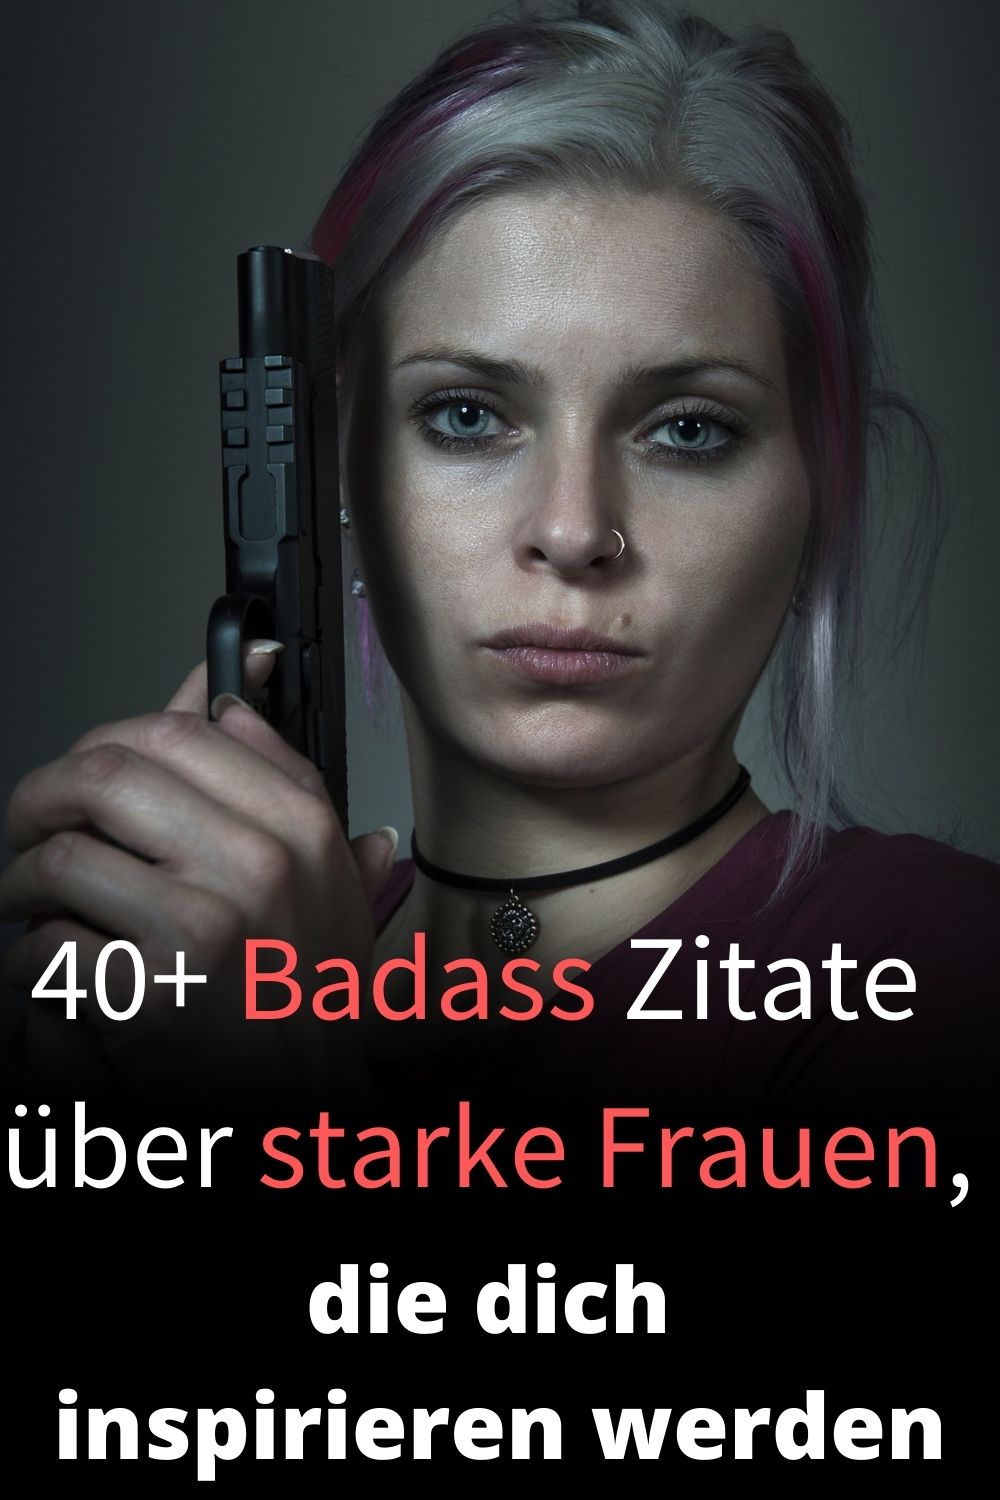 40-Badass-Zitate-ueber-starke-Frauen-die-dich-inspirieren-werden